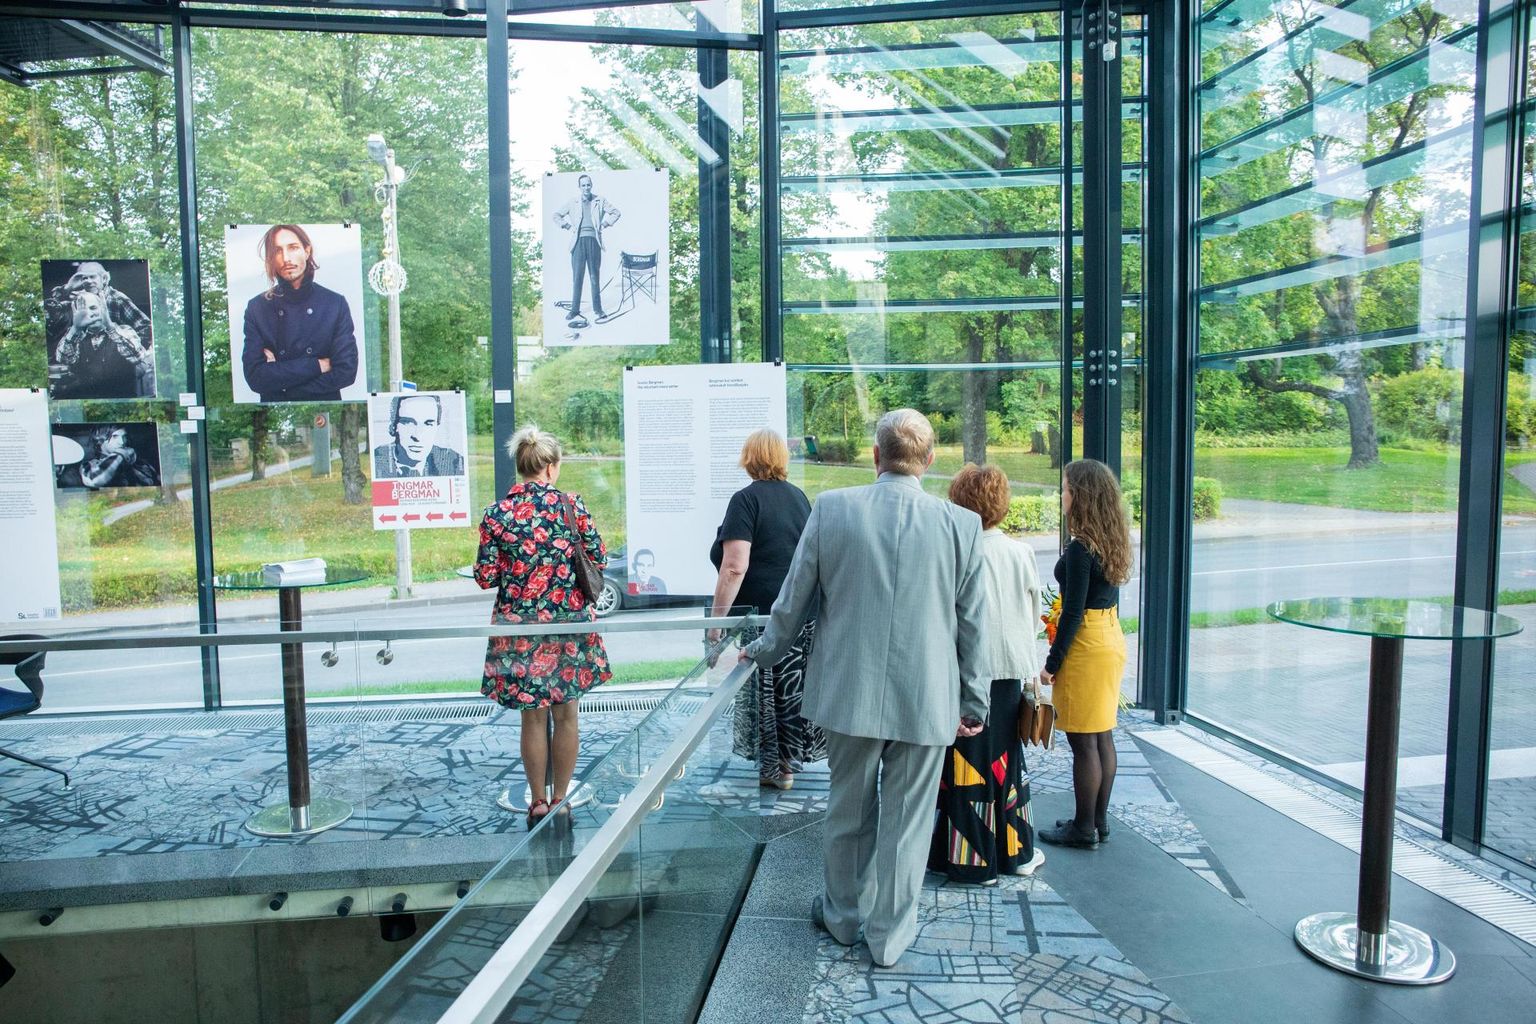 Näitus kinomajas annab ülevaate Ingmar Bergmanist kui moeloojate inspireerijast.